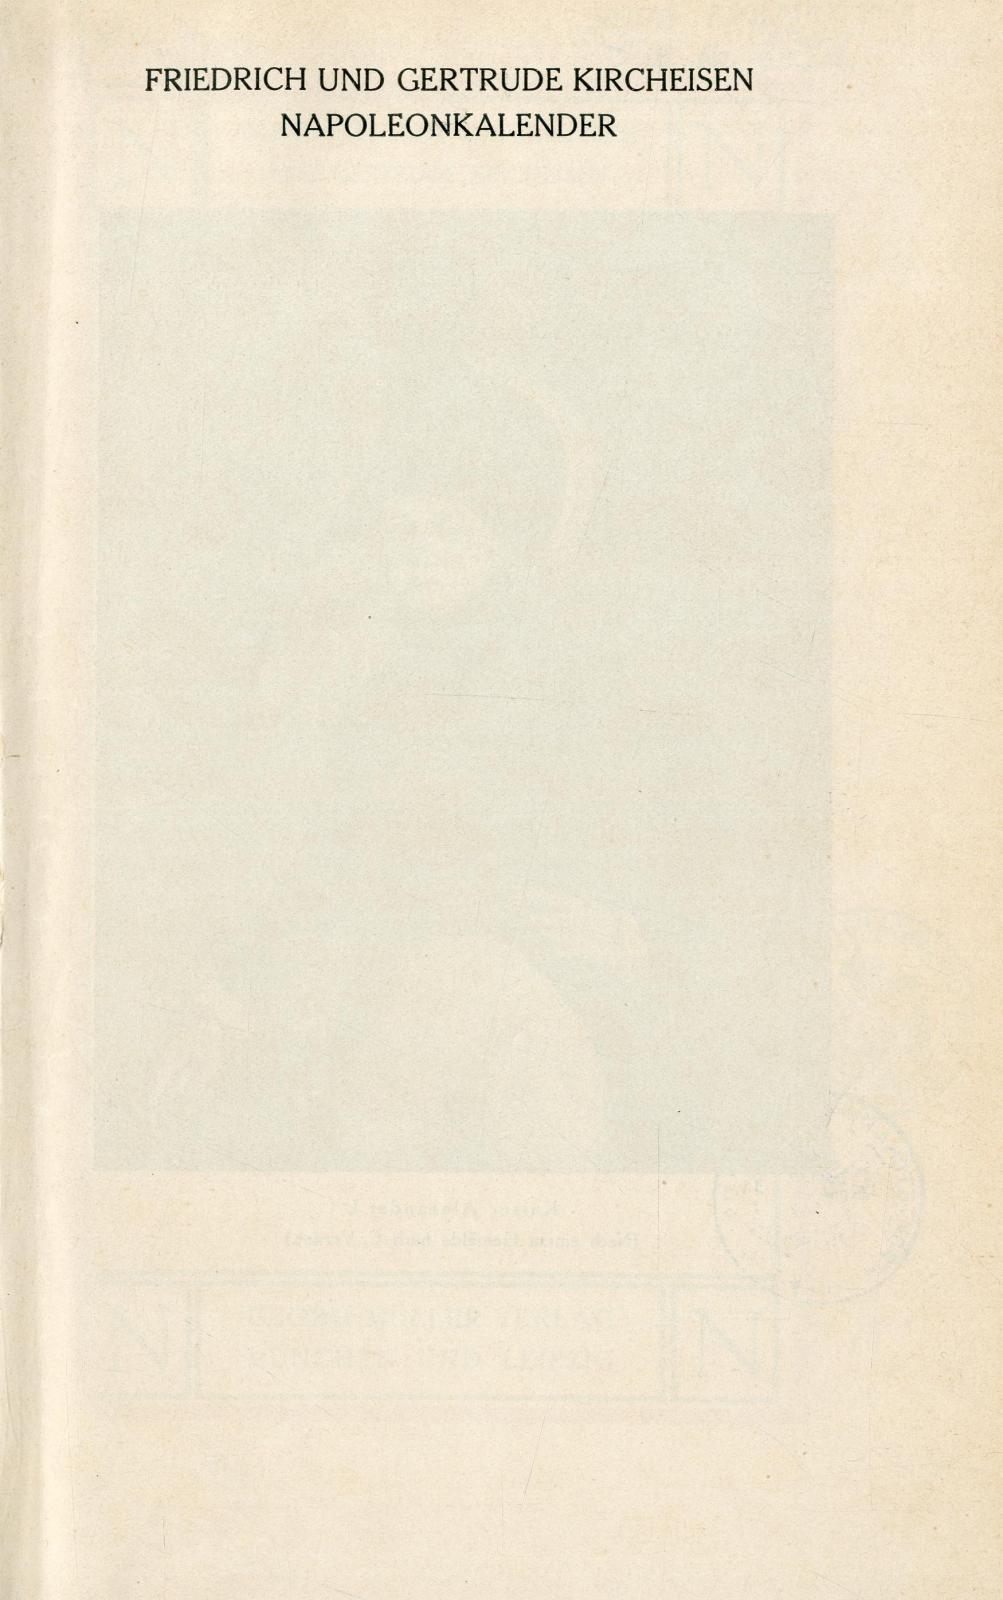 Napoleonkalender und Gedenkbuch der Befreiungskriege auf das Jahr 1812 / hrsg. von Friedrich und Gertrude Kircheisen